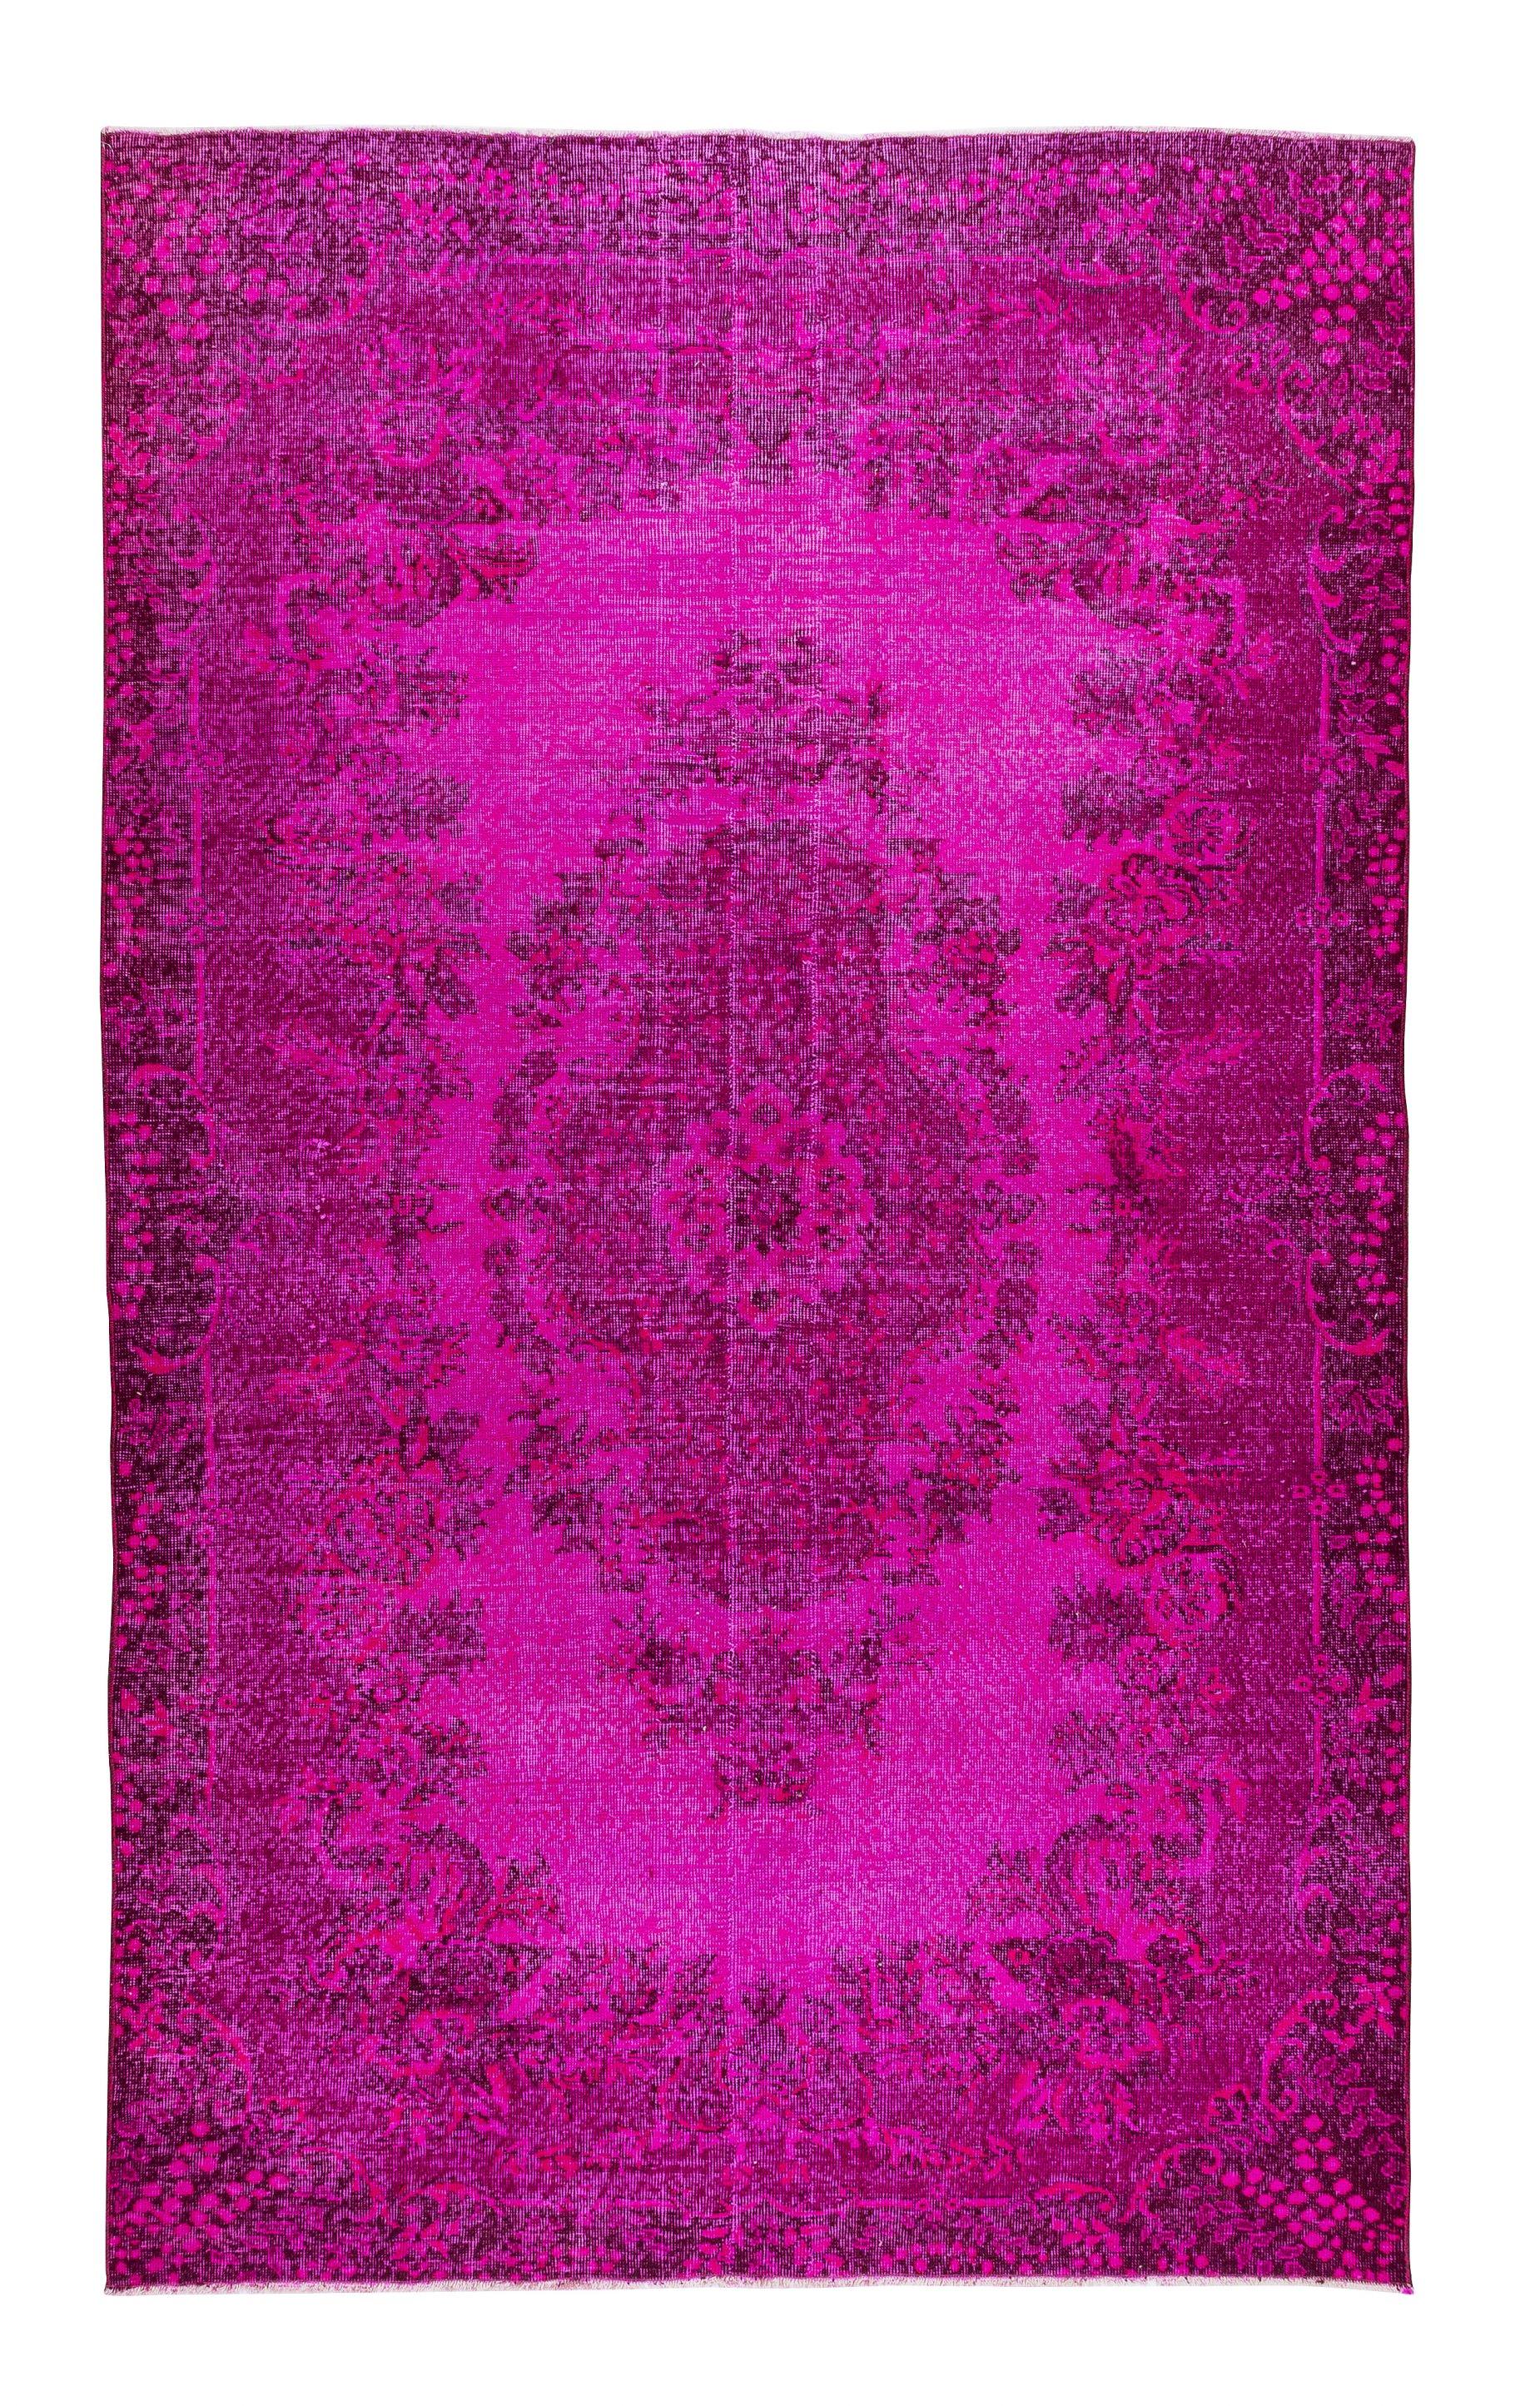 6.3x10.4 Ft türkischer handgefertigter 1960er Jahre authentischer Teppich in Hot Pink für modernes Interieur